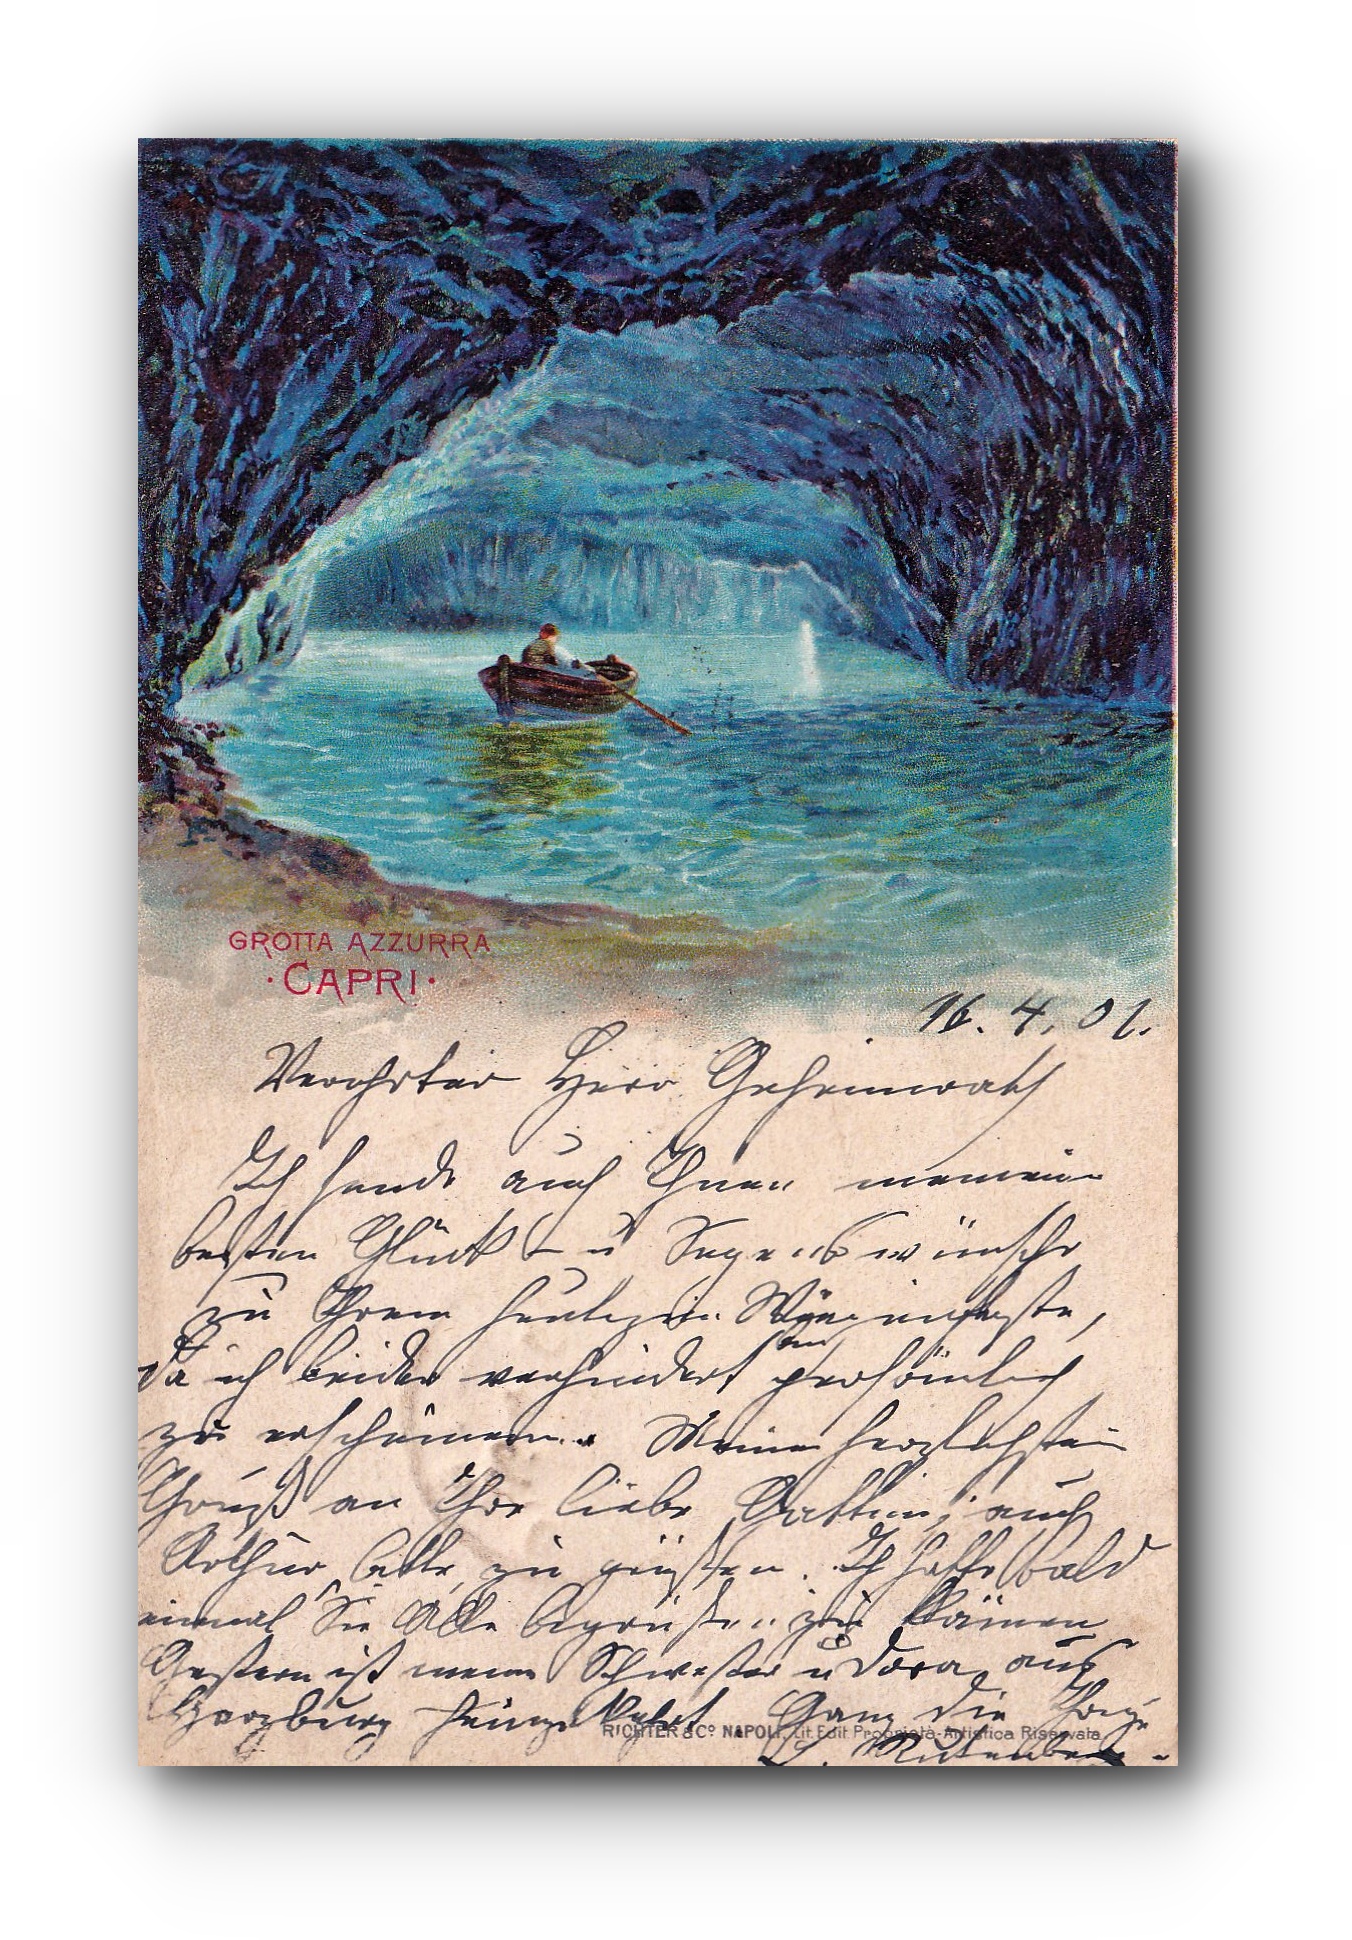 CAPRI - 16.04.1901 - Die Blaue Grotte - La Grotte bleue - The Blue Grotto